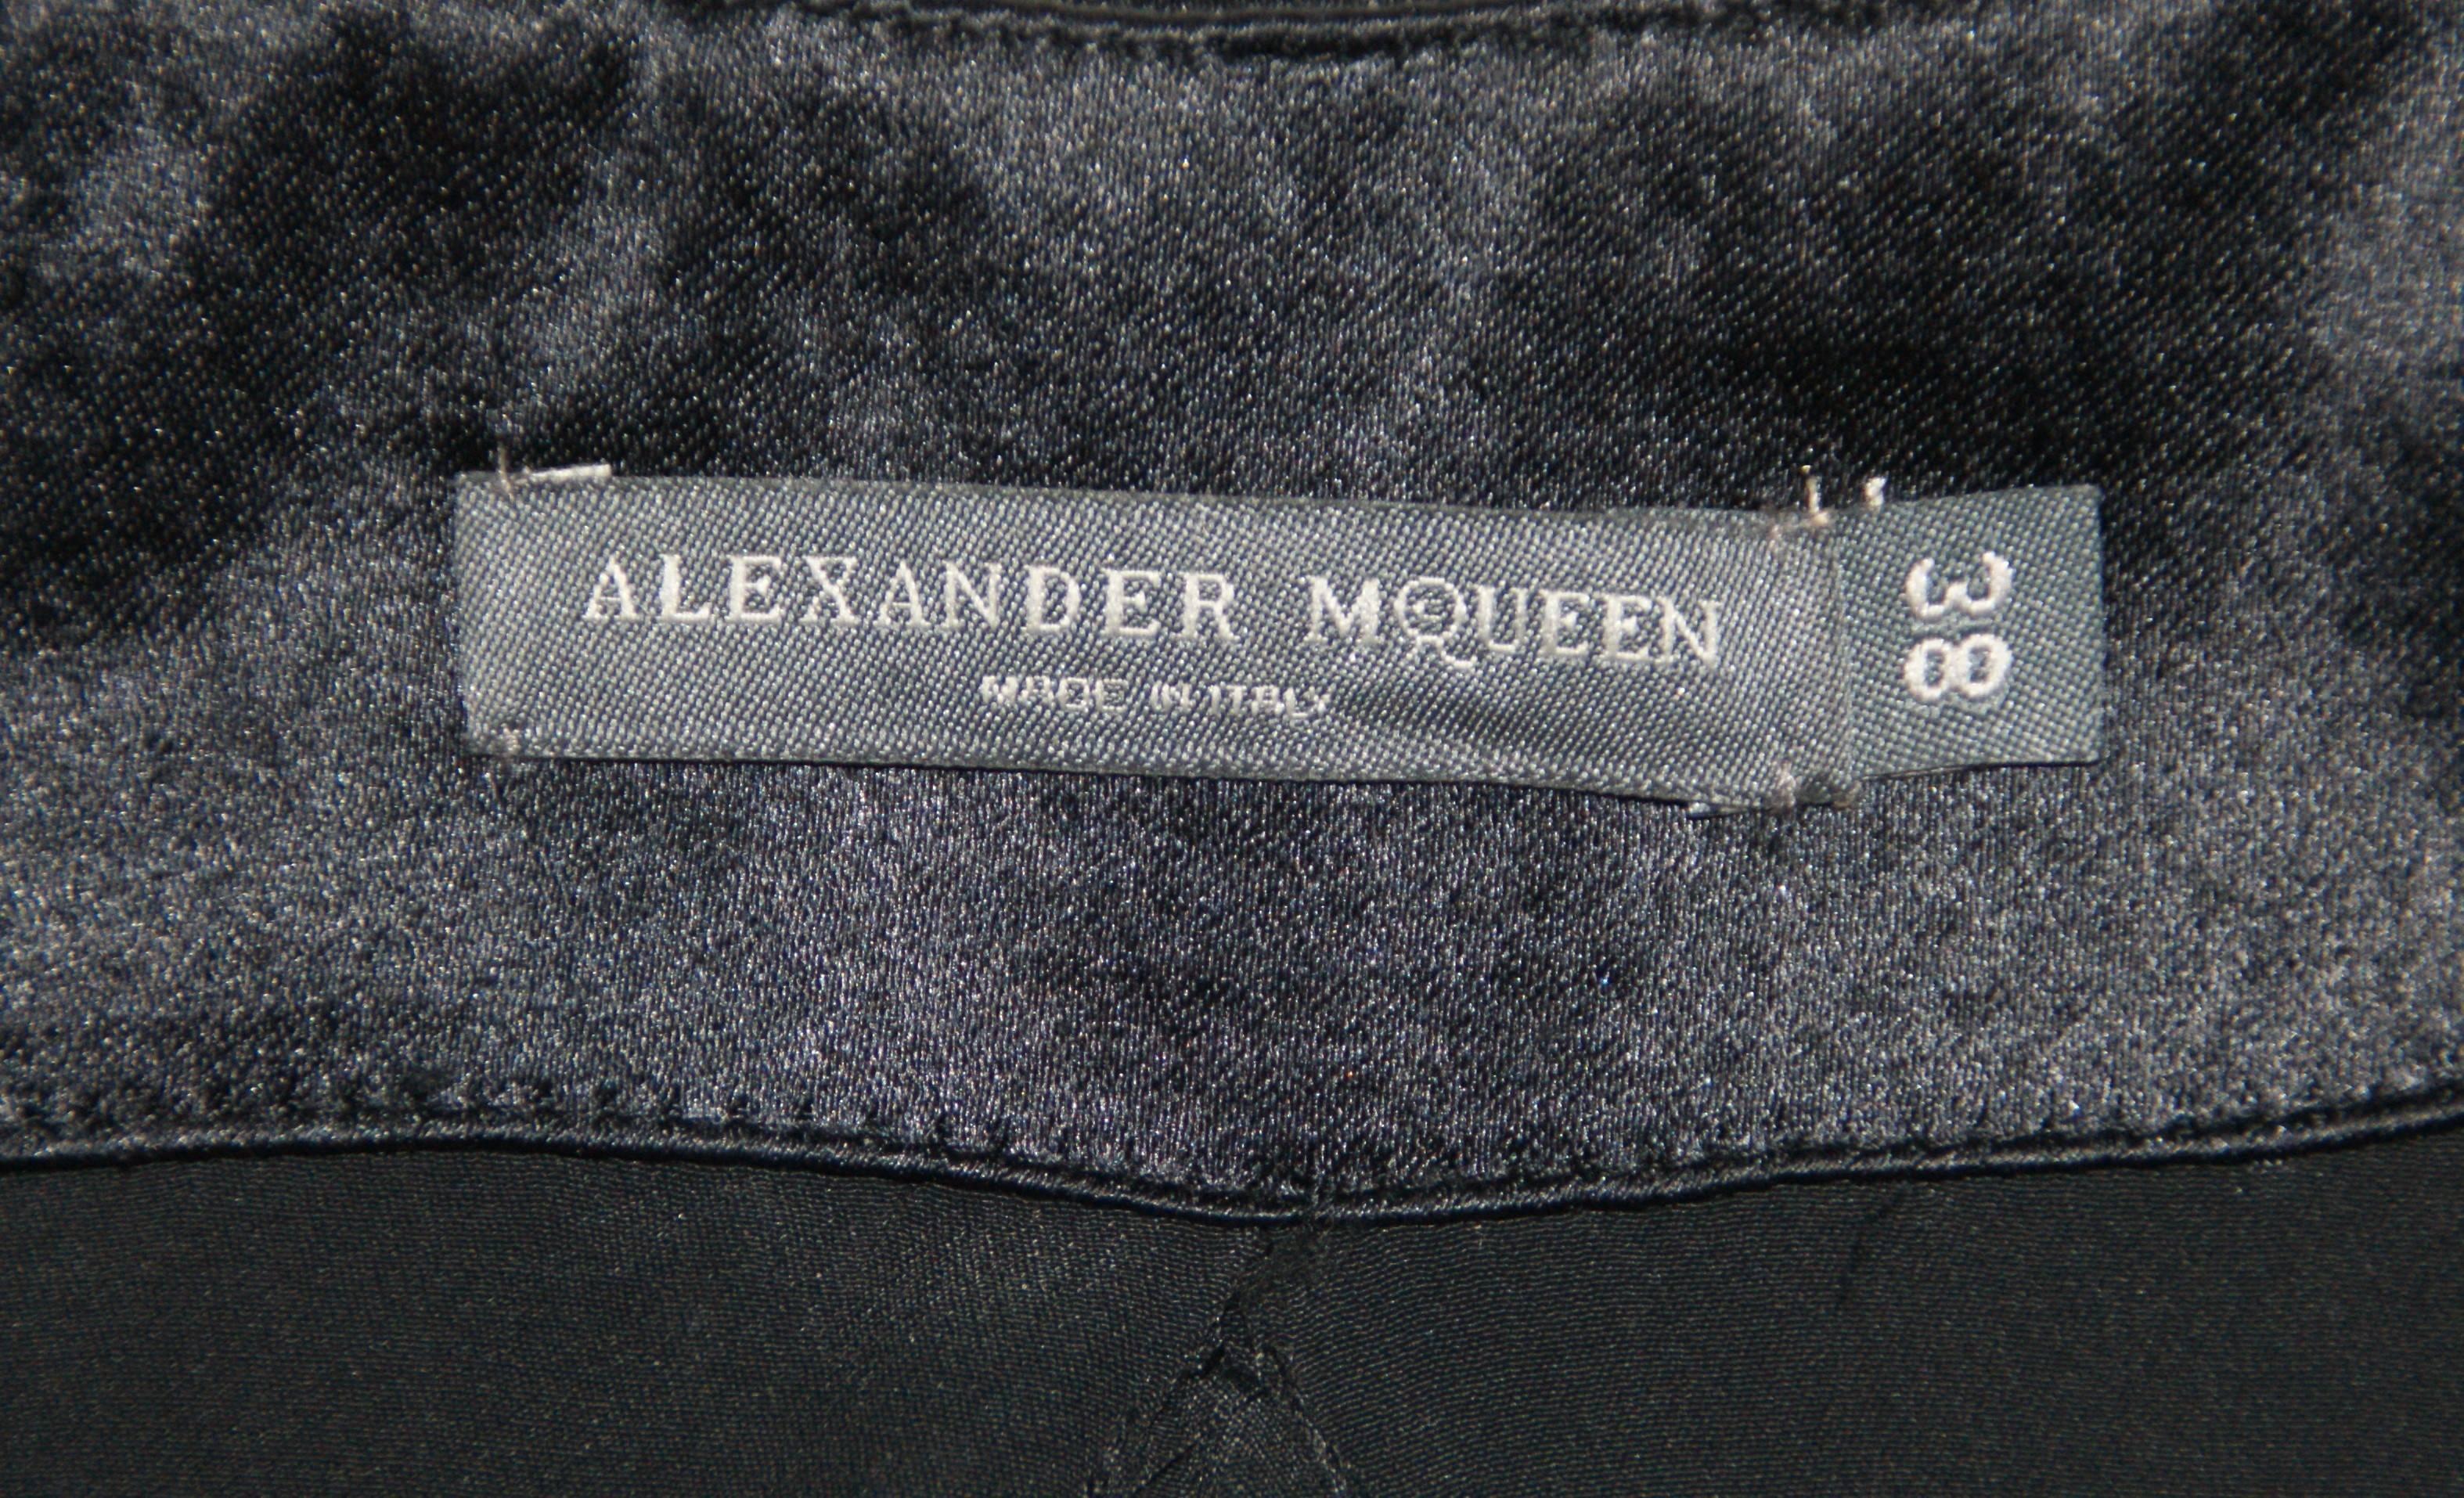 A/W 2007 Runway Alexander McQueen Flame Beaded Black Silk Gown Dress 38 1